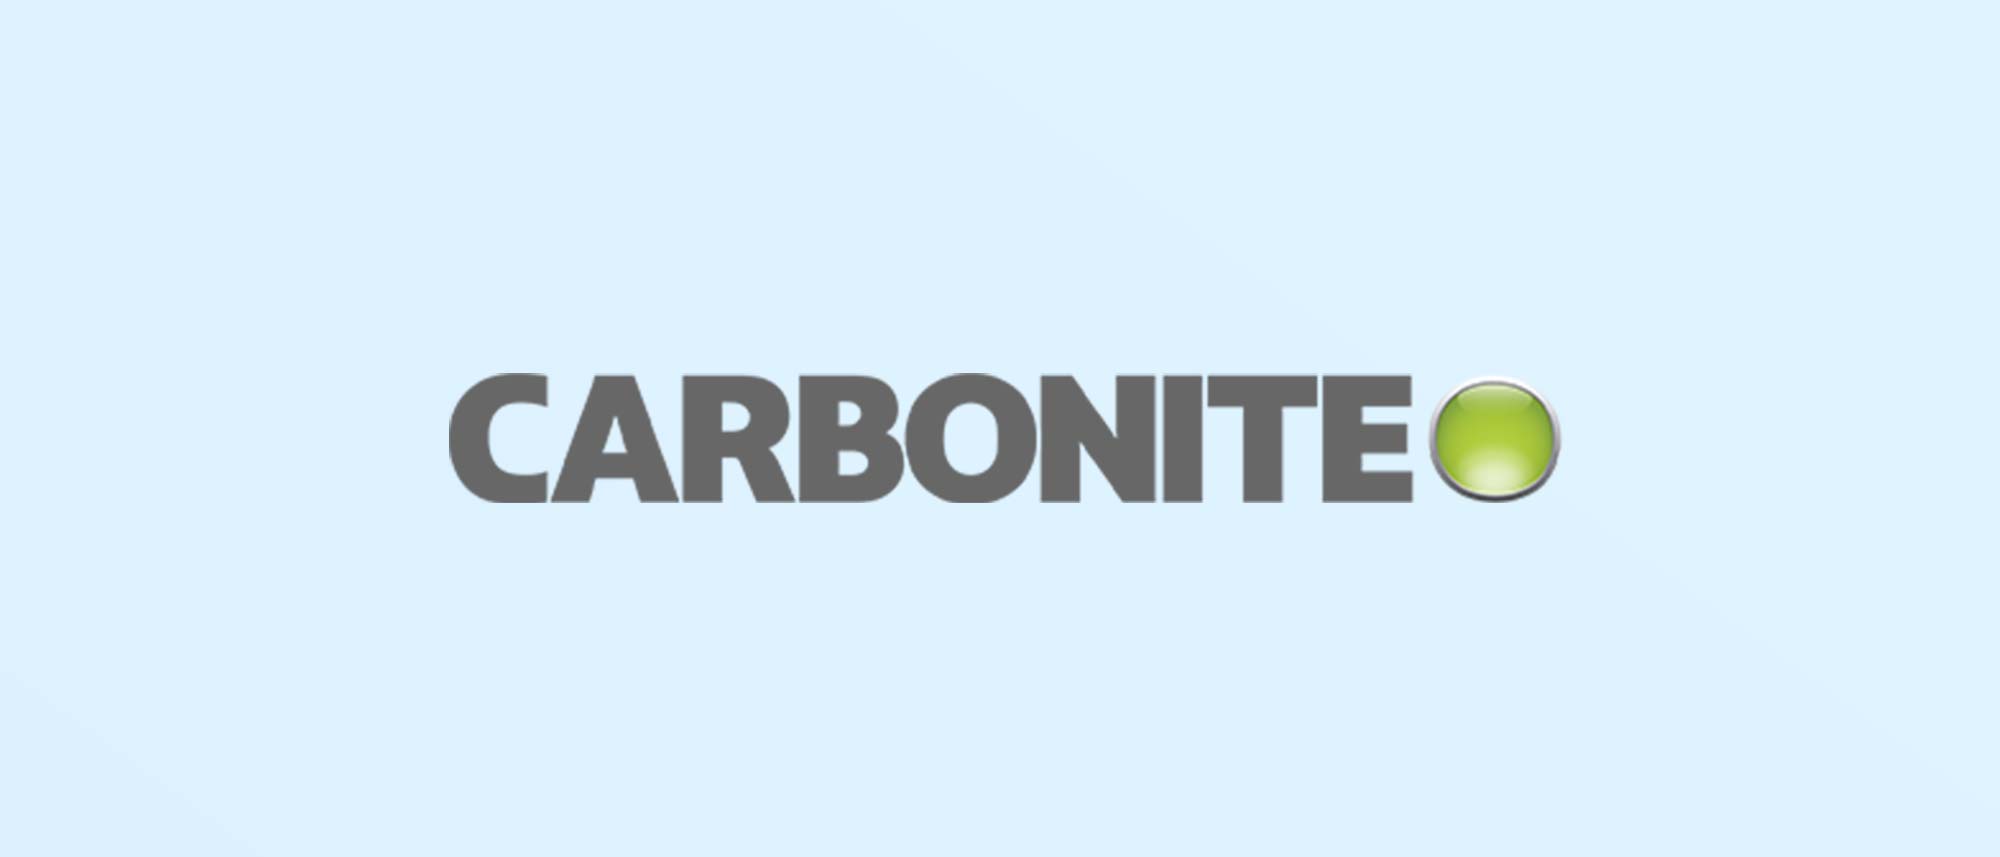 Download carbonite backup software